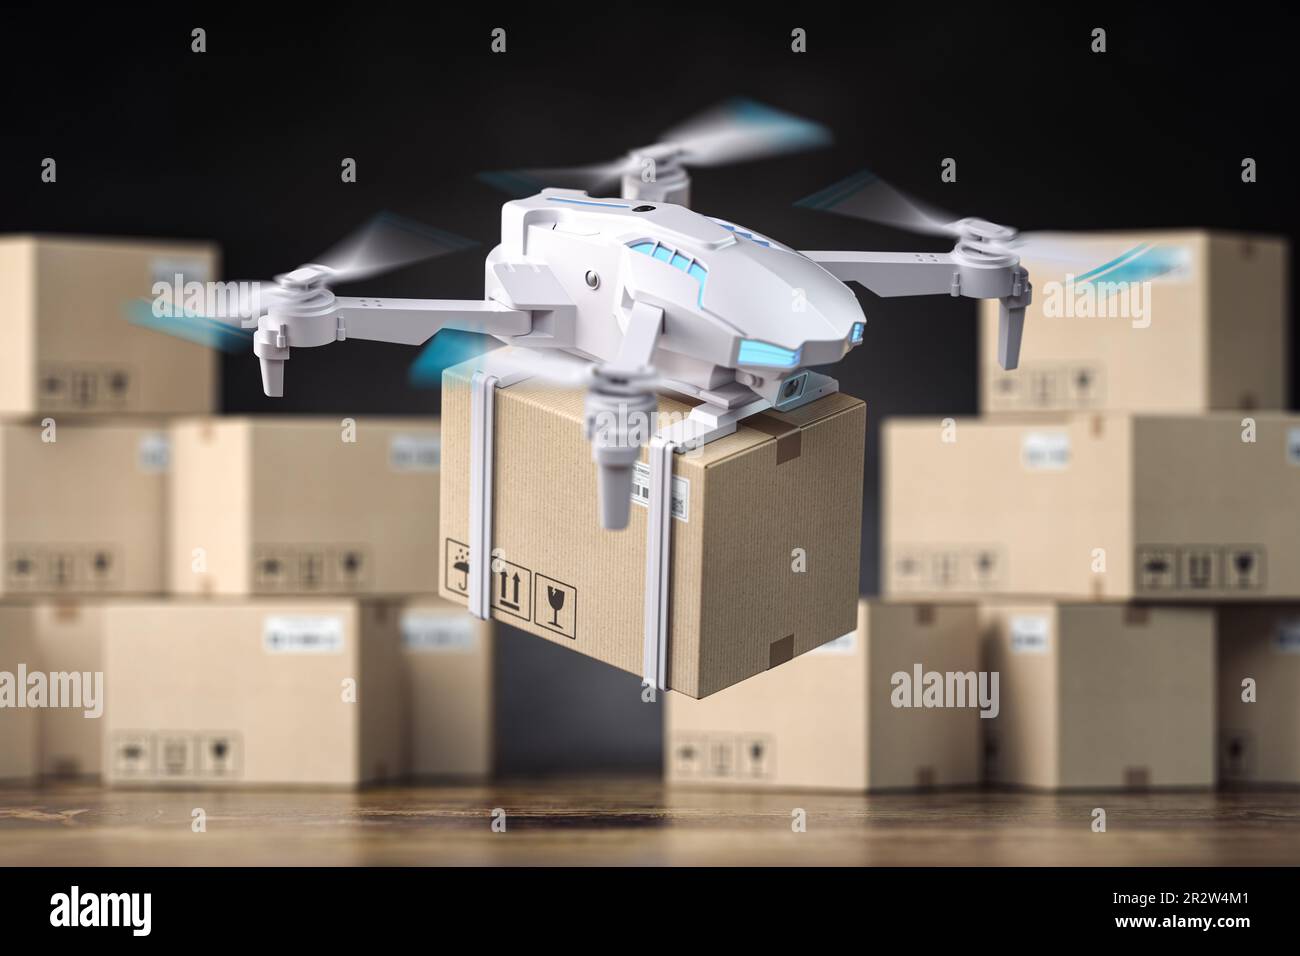 Drone ou quadcopter et boîte en carton, dans un entrepôt avec des colis. Livraison express et concept logistique. 3d illustration Banque D'Images